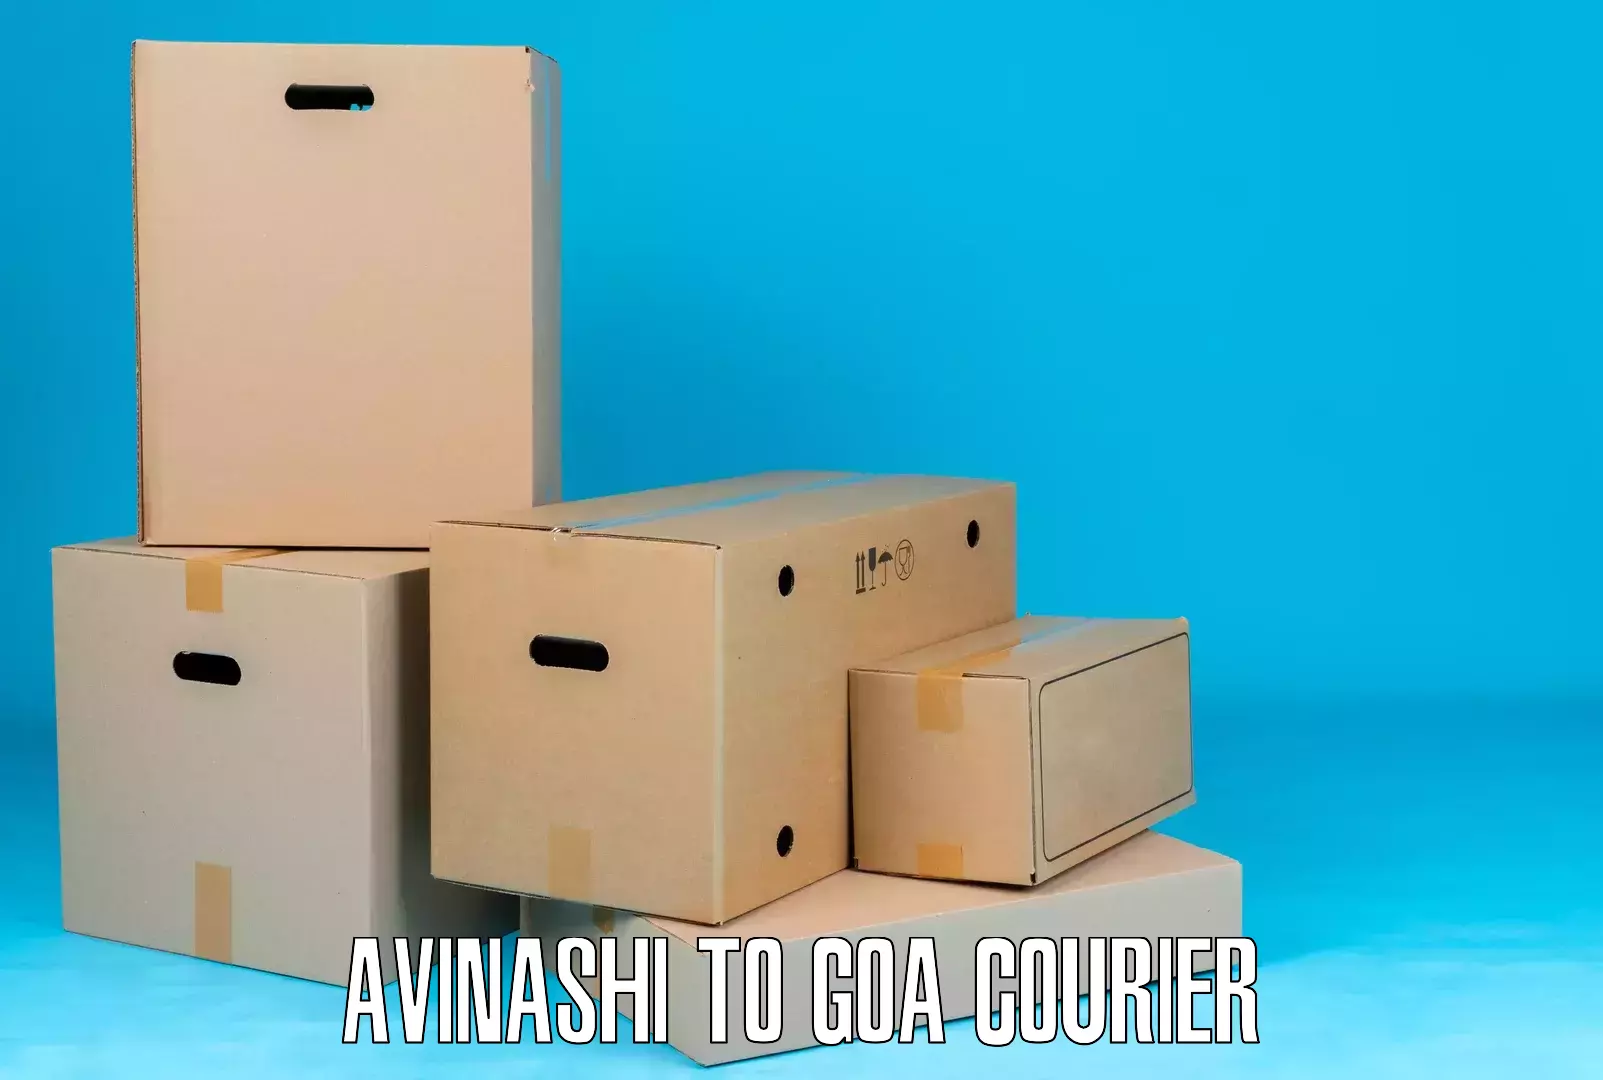 Quality courier partnerships Avinashi to Bardez